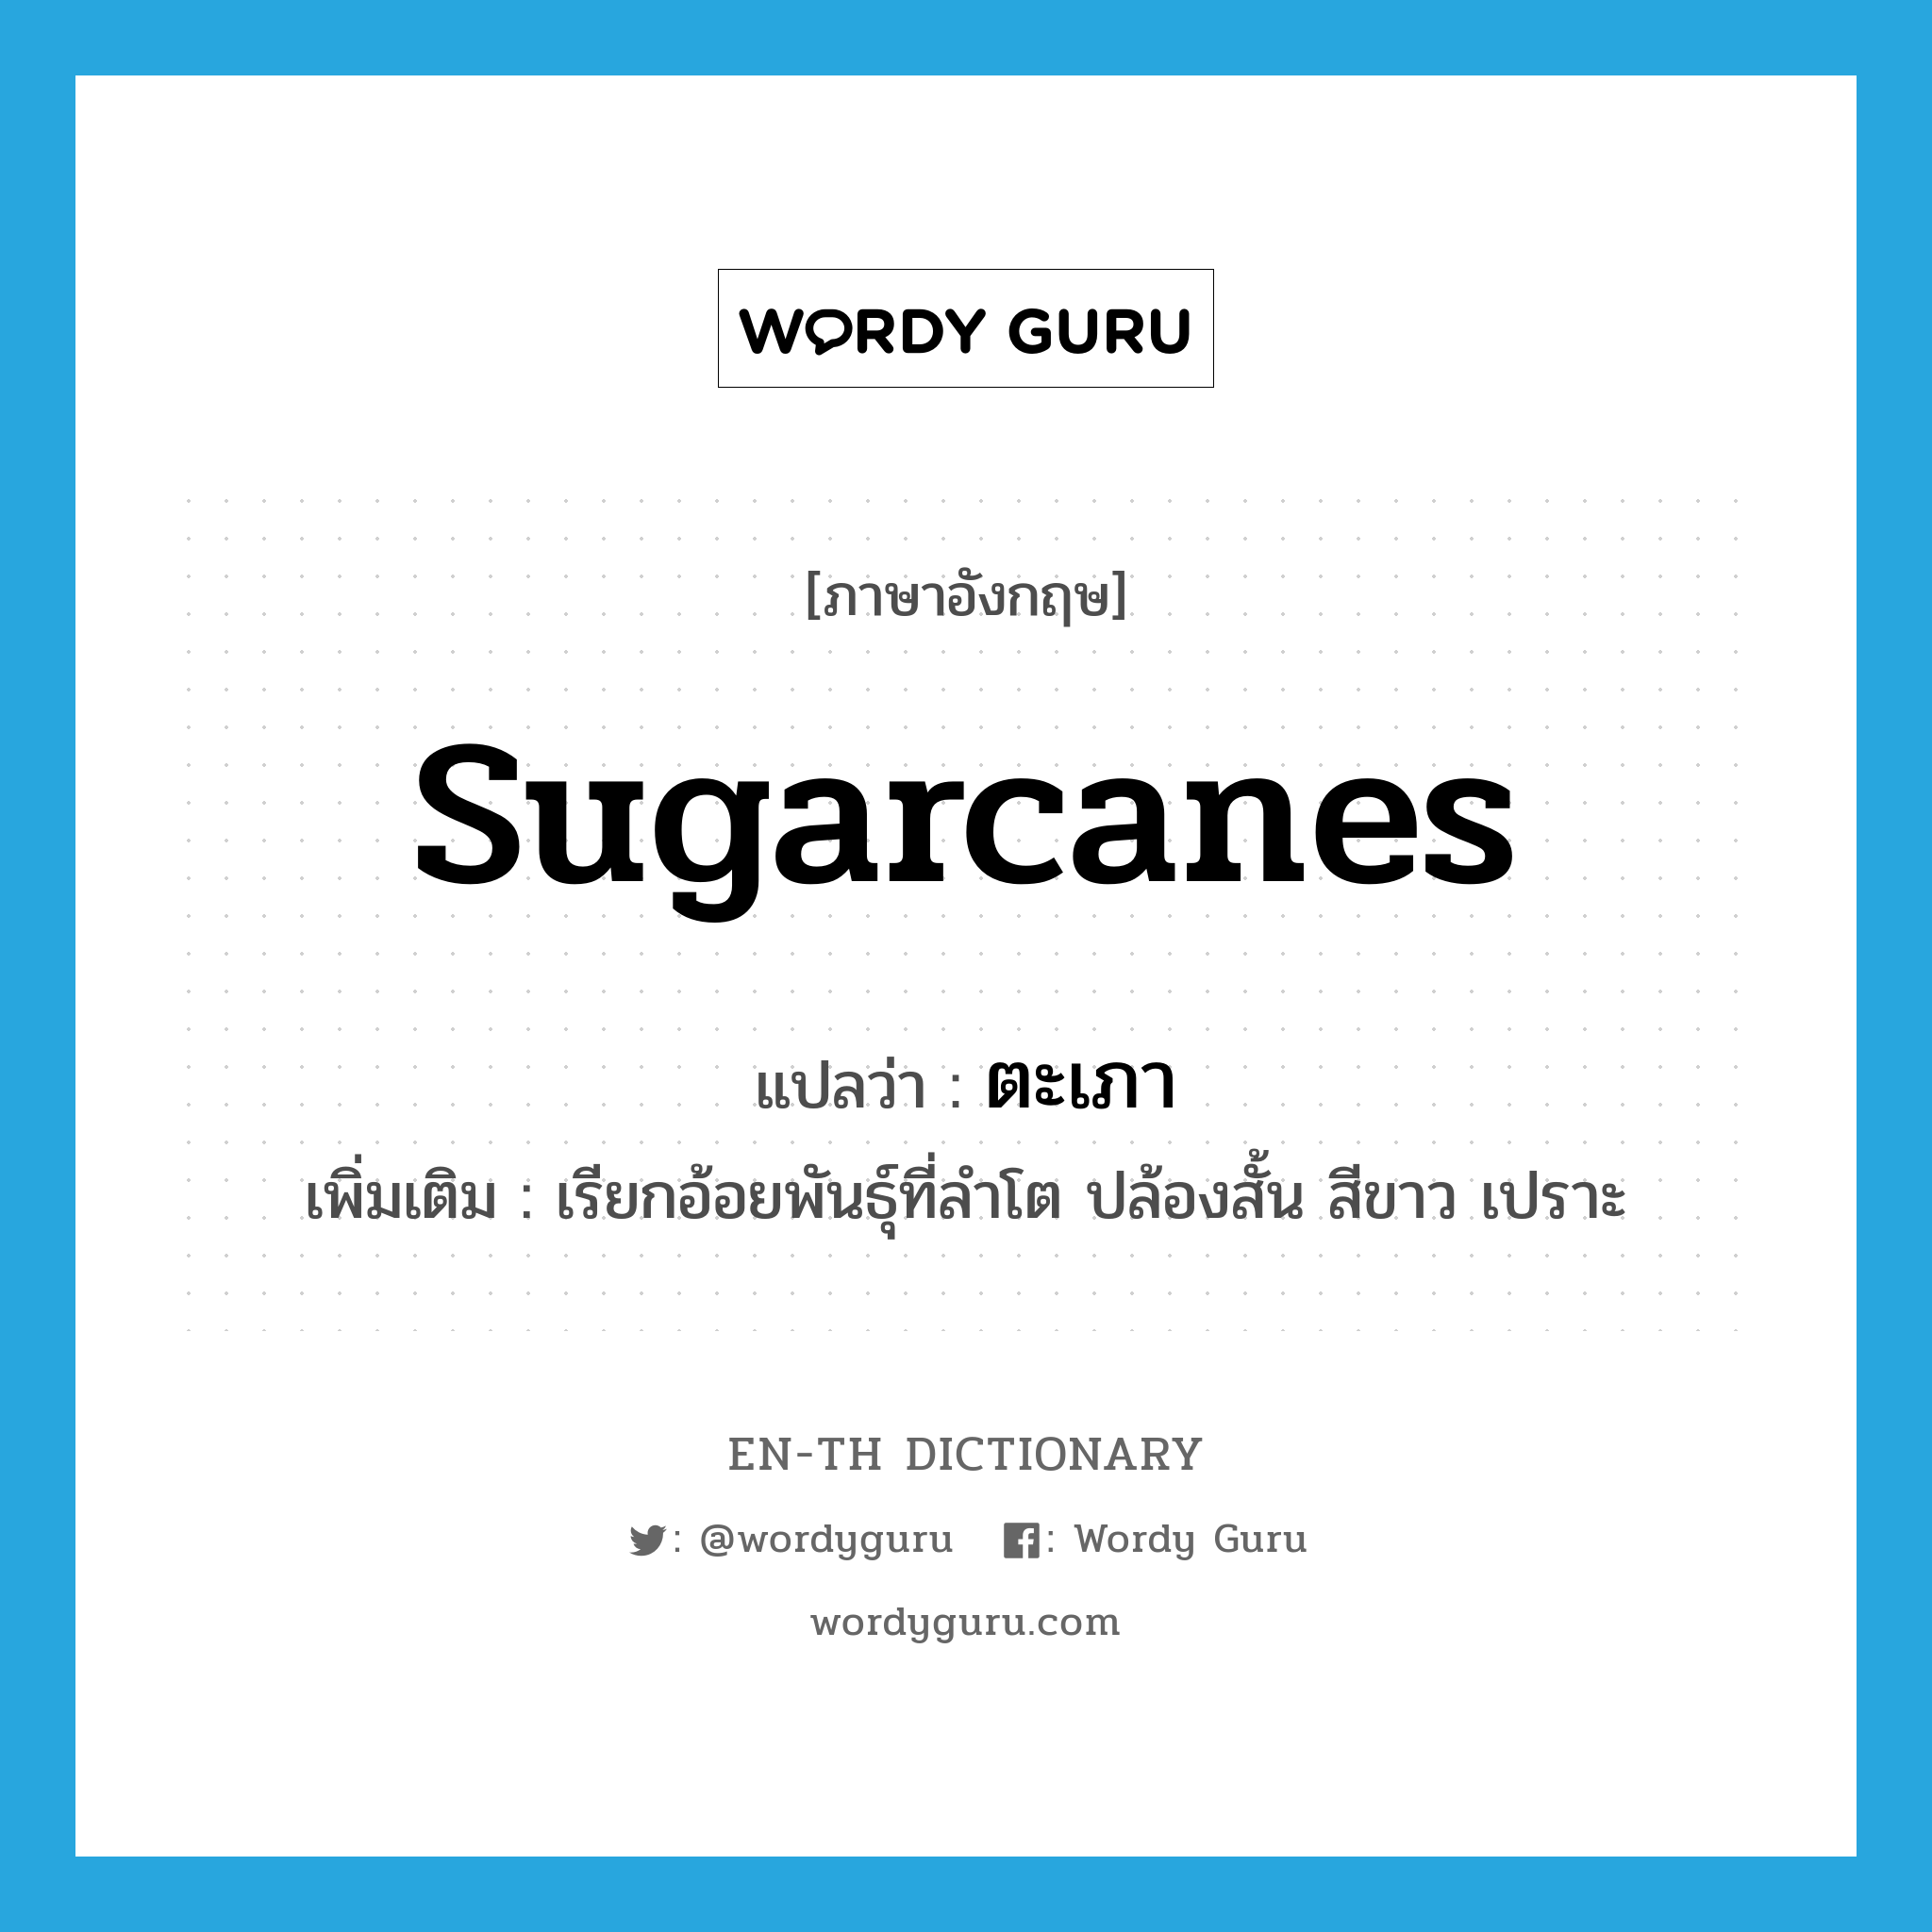 sugarcanes แปลว่า?, คำศัพท์ภาษาอังกฤษ sugarcanes แปลว่า ตะเภา ประเภท N เพิ่มเติม เรียกอ้อยพันธุ์ที่ลำโต ปล้องสั้น สีขาว เปราะ หมวด N